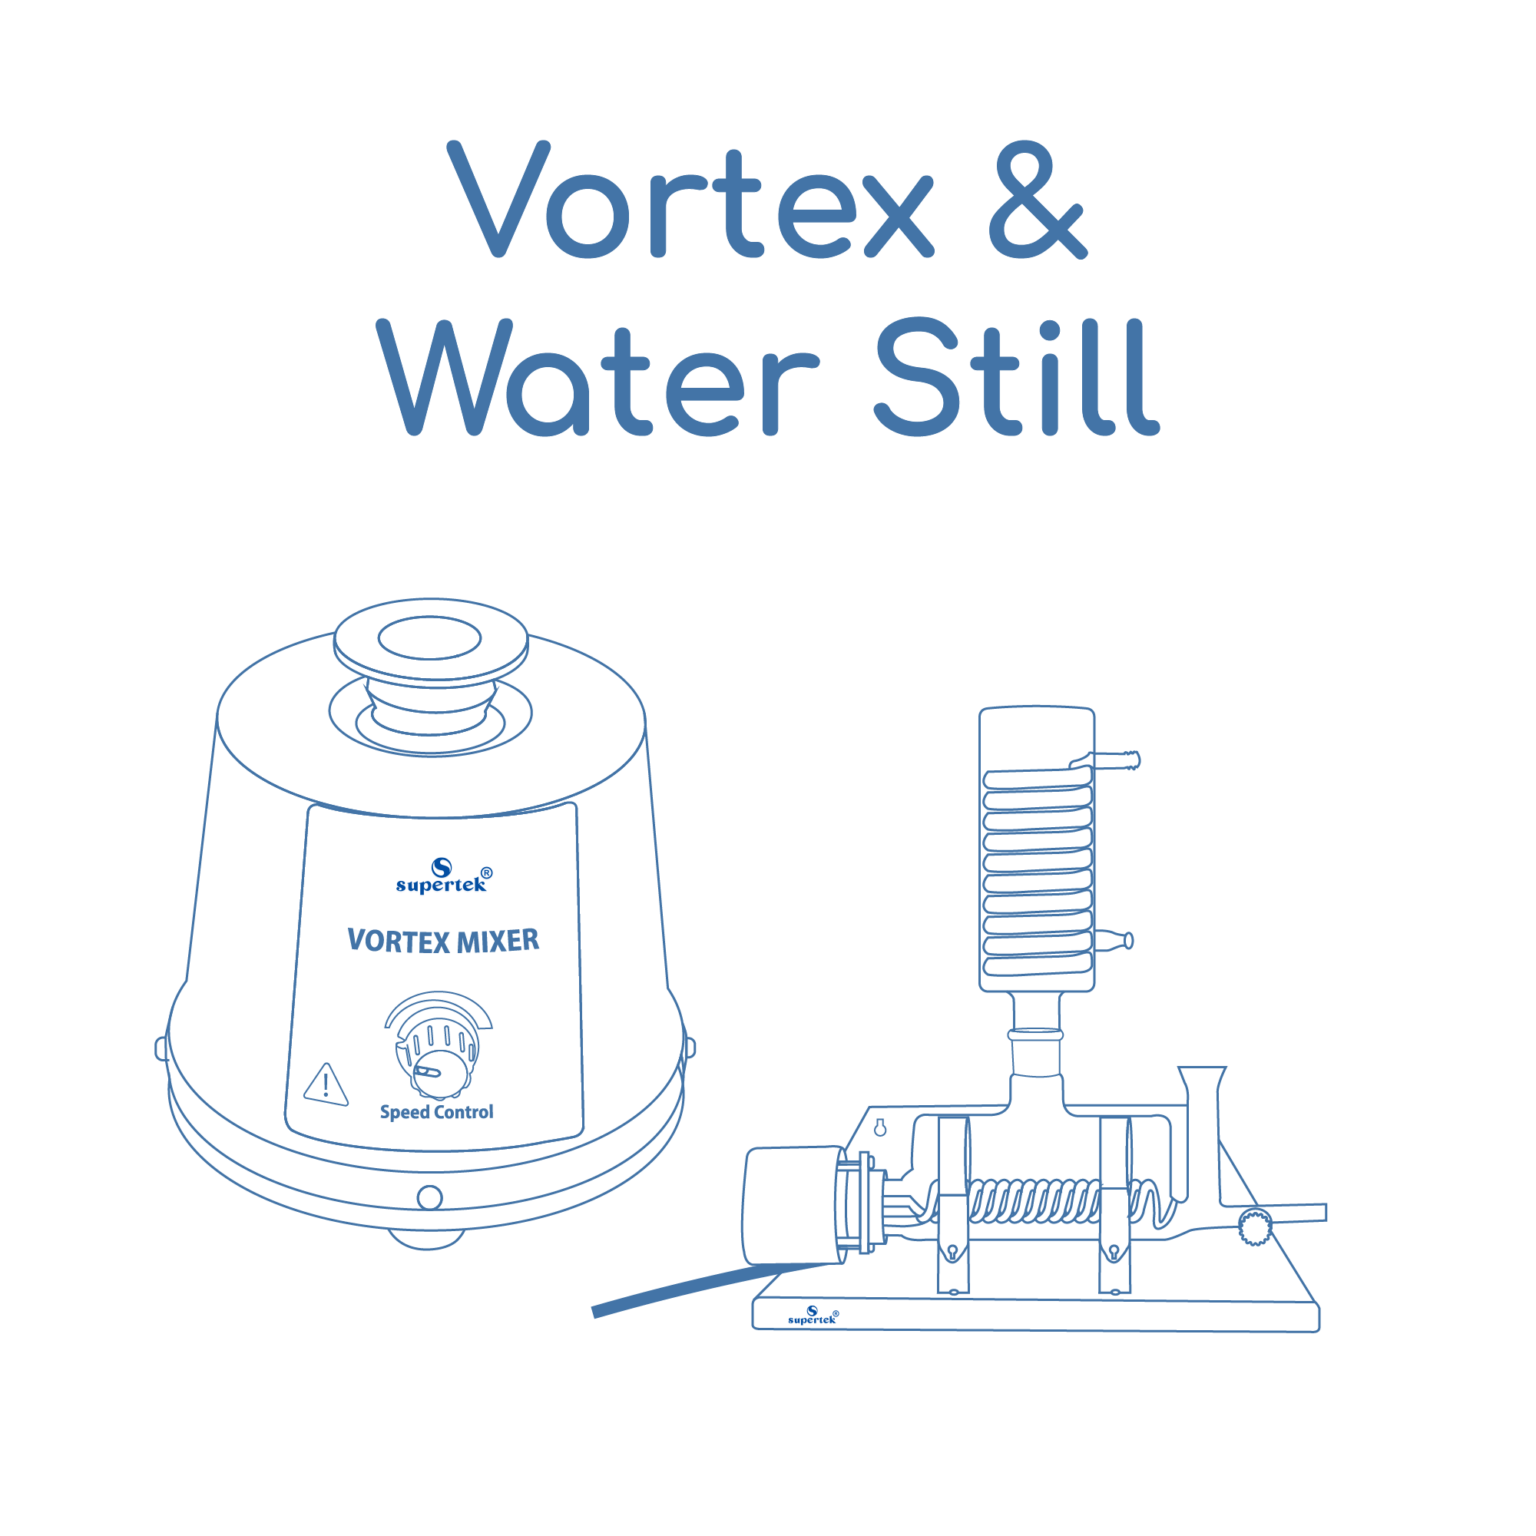 Vortex & Water Still